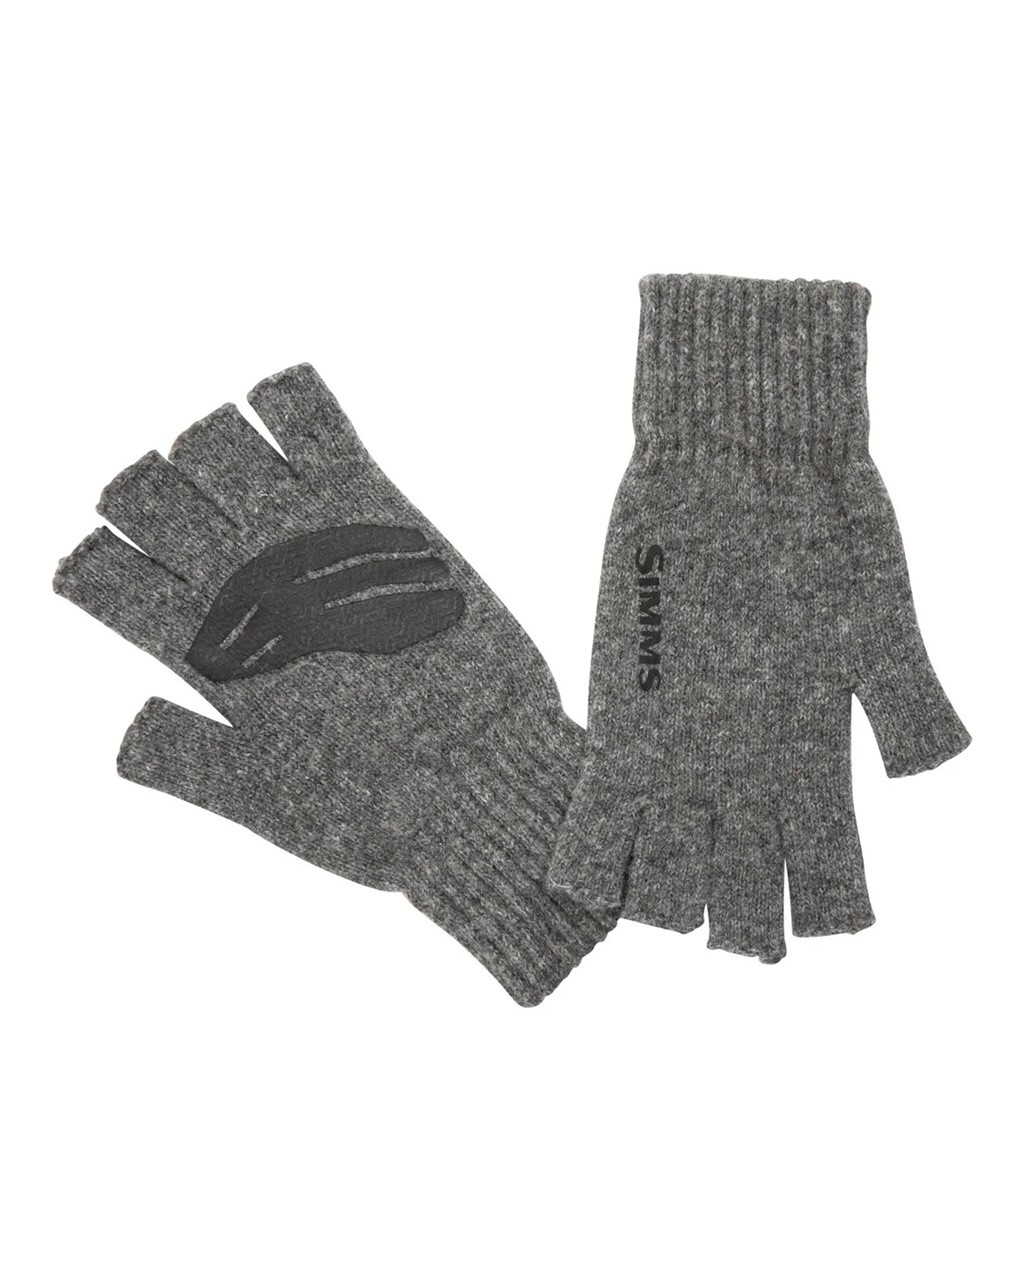 Wool Half-Finger Glove